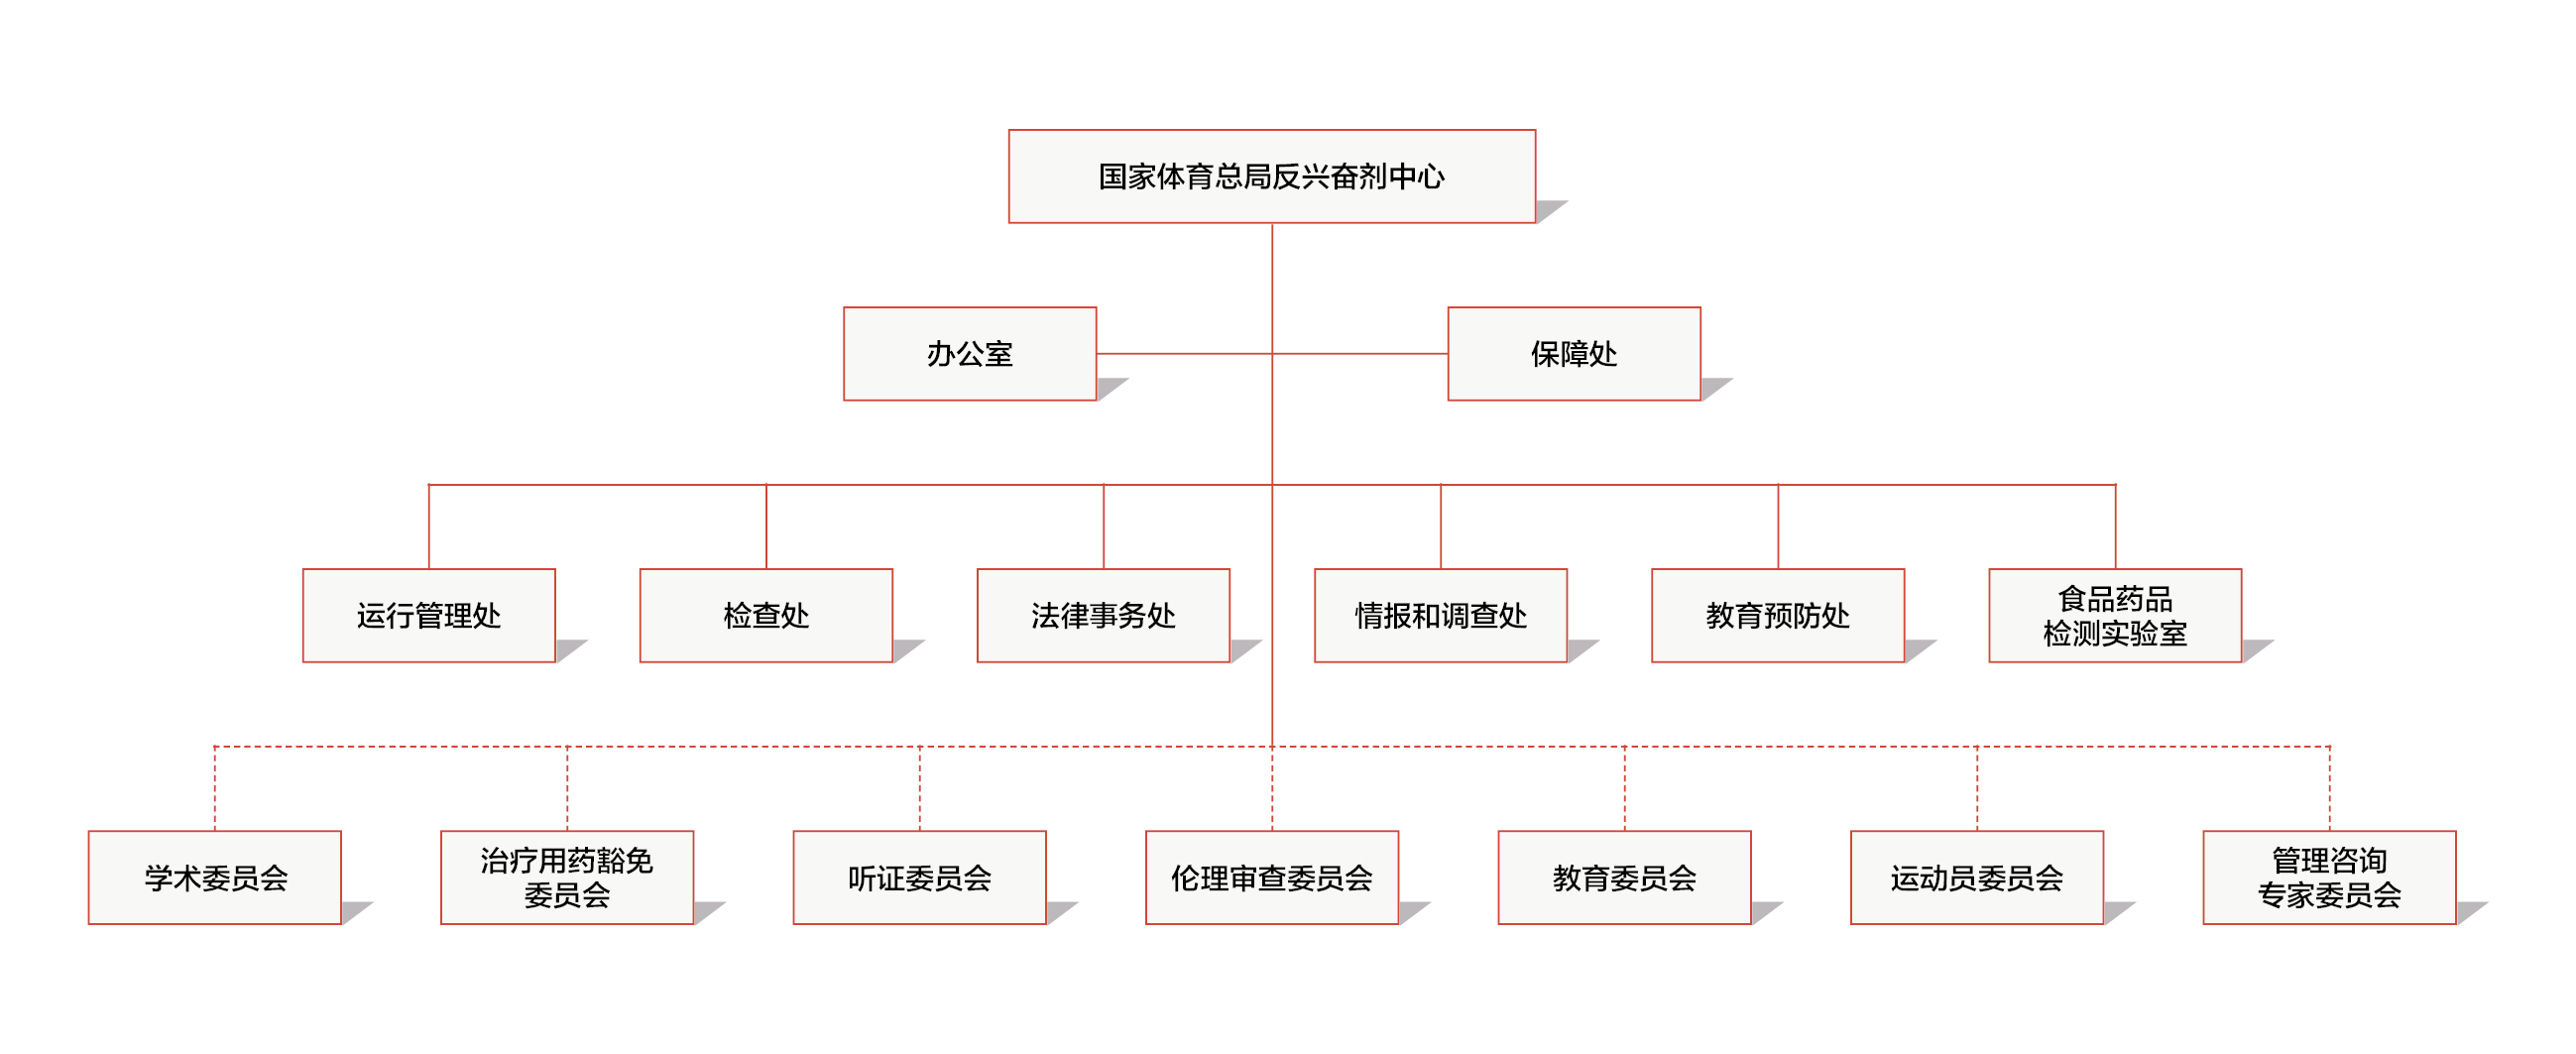 组织机构图.jpg